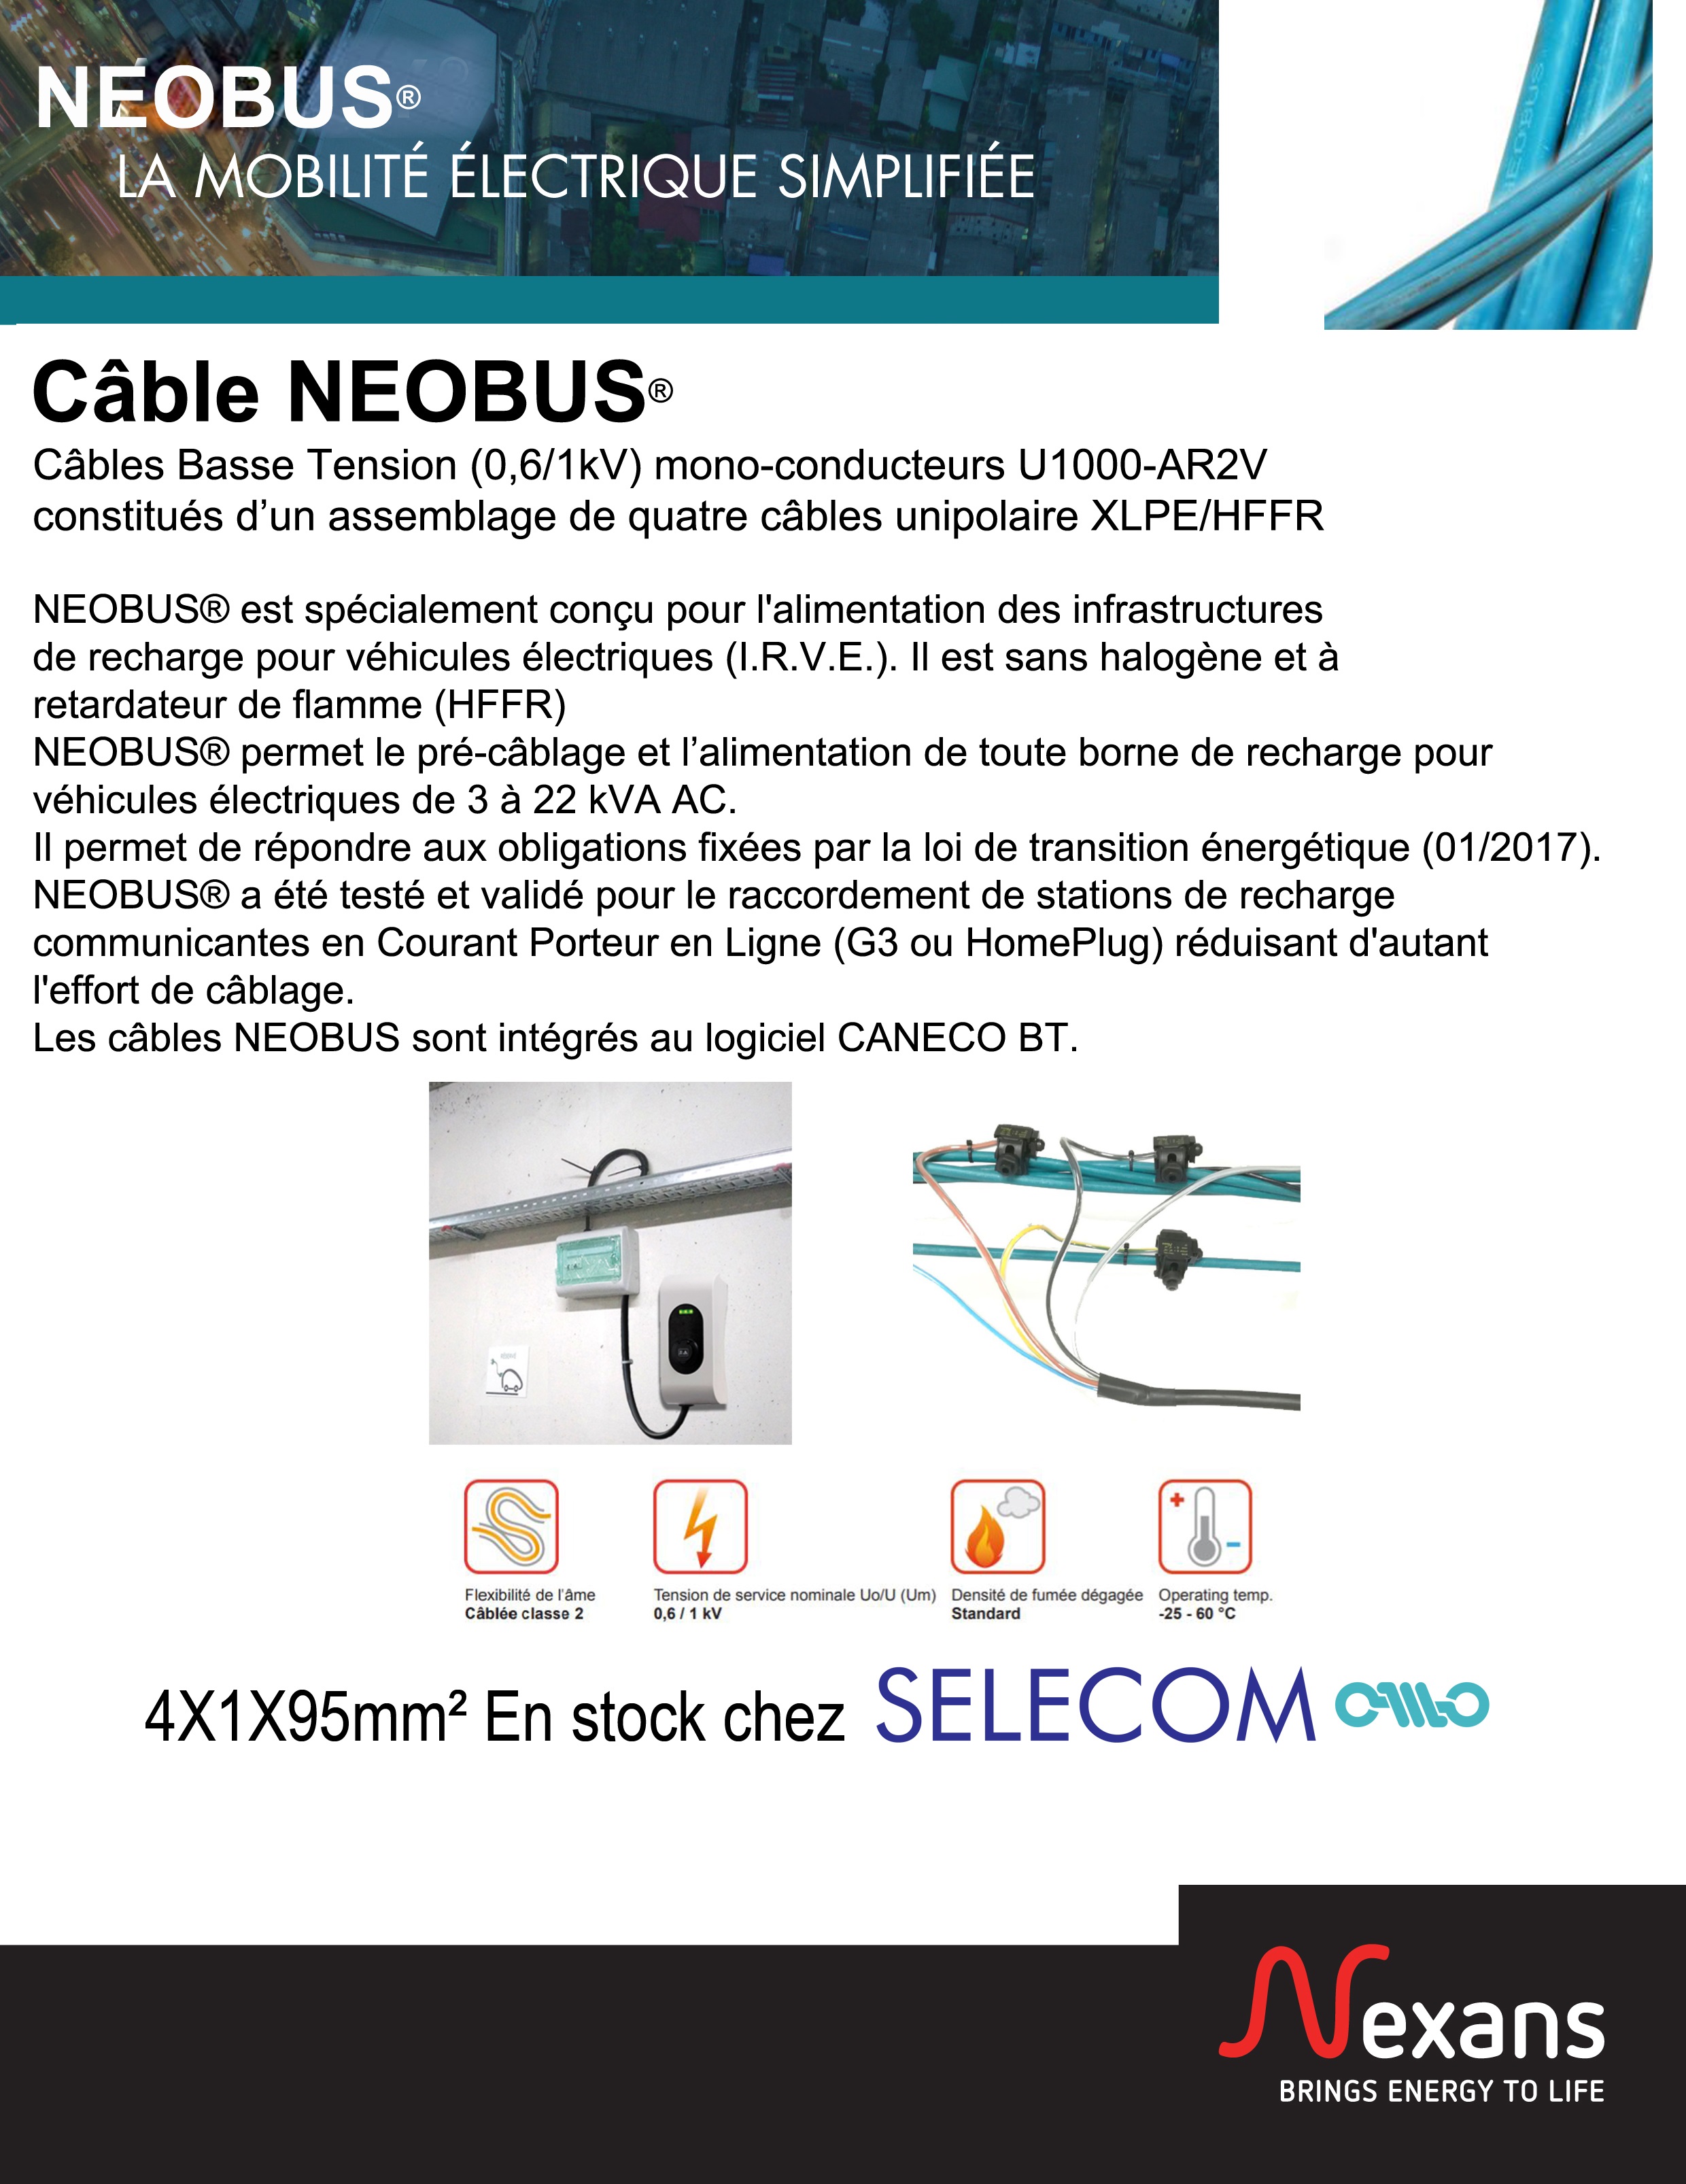 Câble Neobus - Basse Tension BT pour alimenter les bornes de recharges pour véhicules électriques